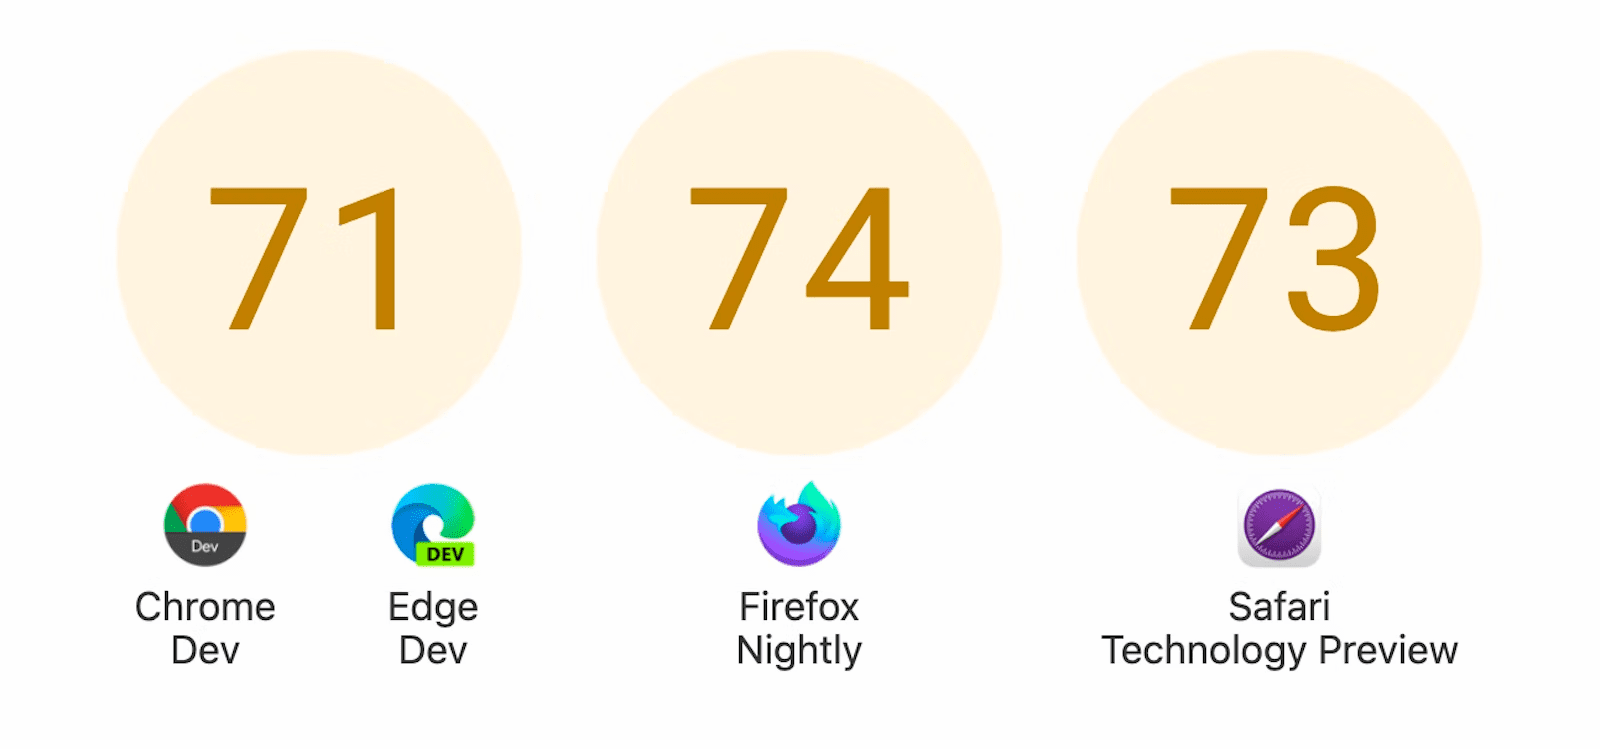 Vengono mostrati tre cerchi con punteggi: 71 per Chrome Dev e Edge Dev, 74 per Firefox Nightly e 73 per Safari Technology Preview.